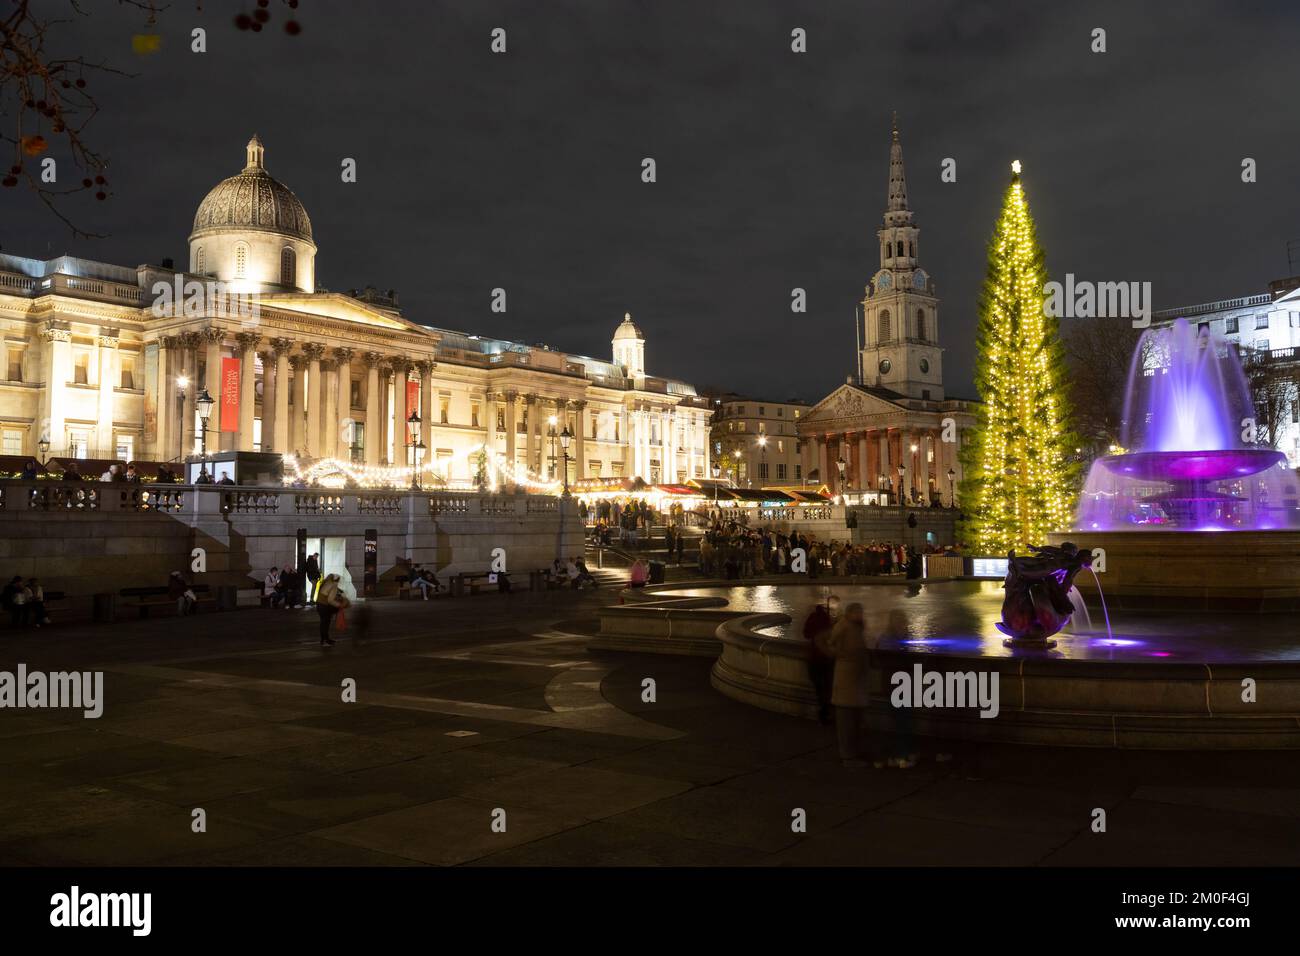 LONDRA, UK - 6th DEC 2022: Trafalgar Square a Londra a Natale. Mostra un albero di Natale, bancarelle di mercato e una fontana. Le persone possono essere viste. Foto Stock